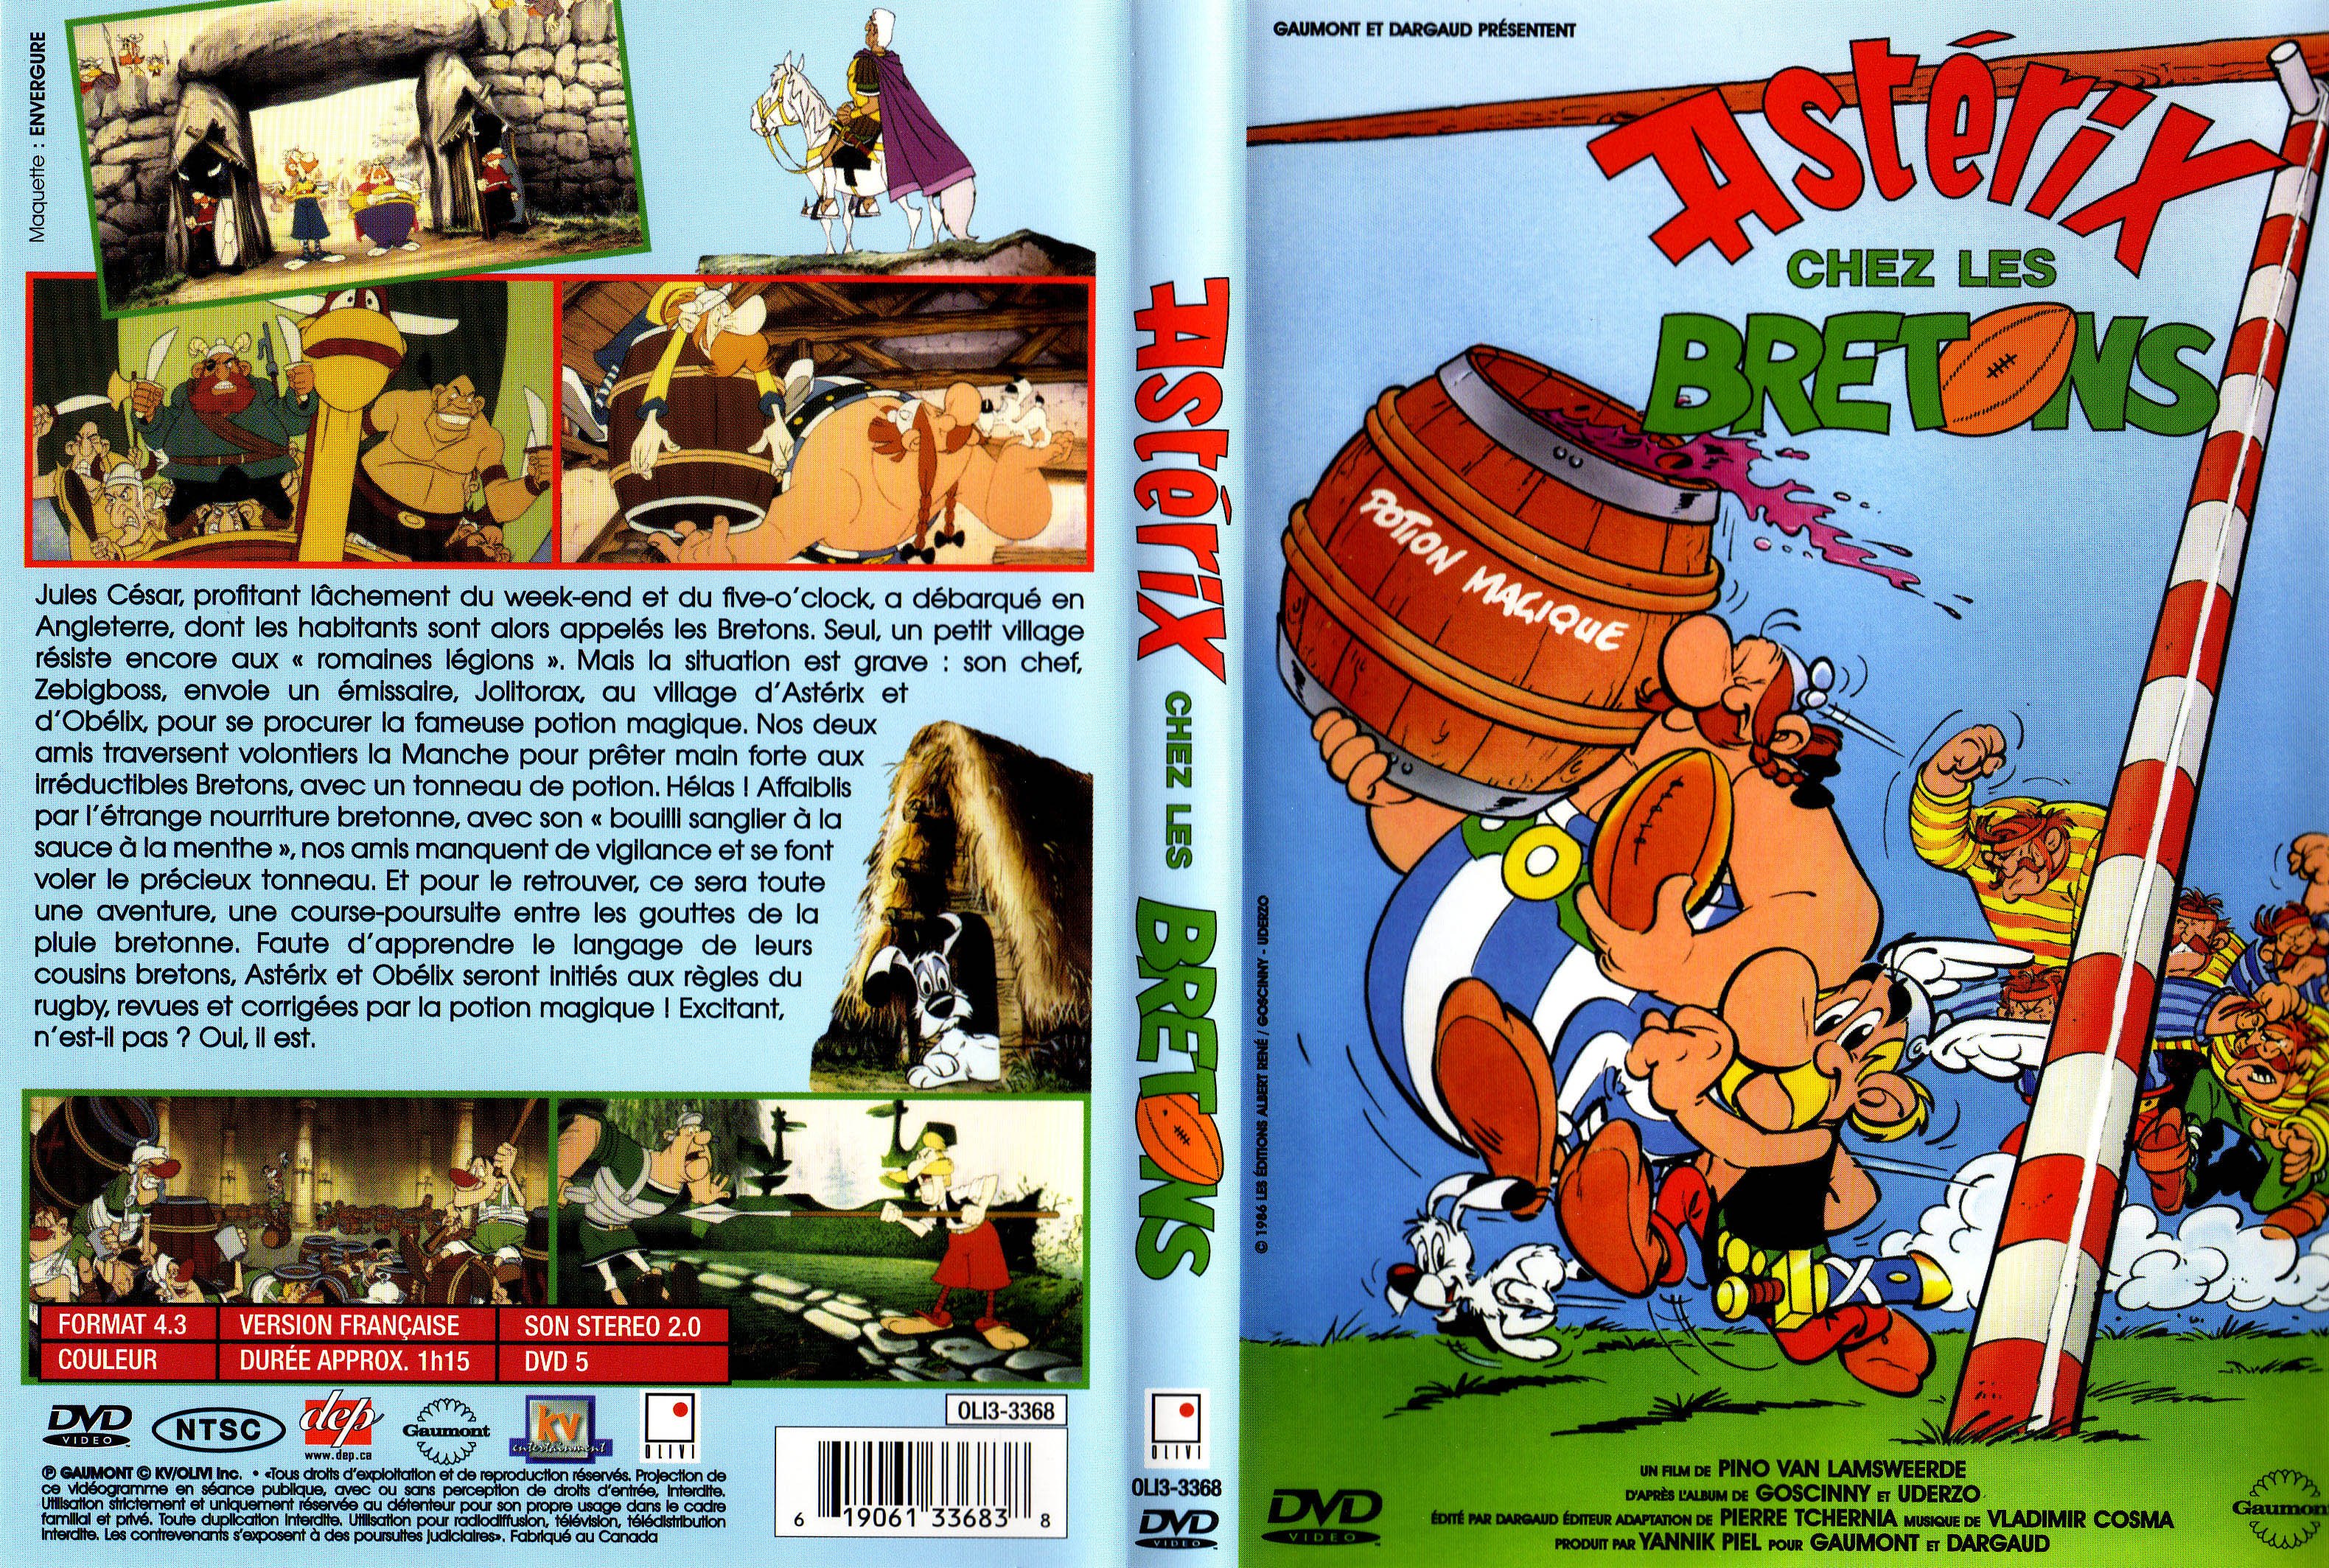 Jaquette DVD Asterix chez les bretons